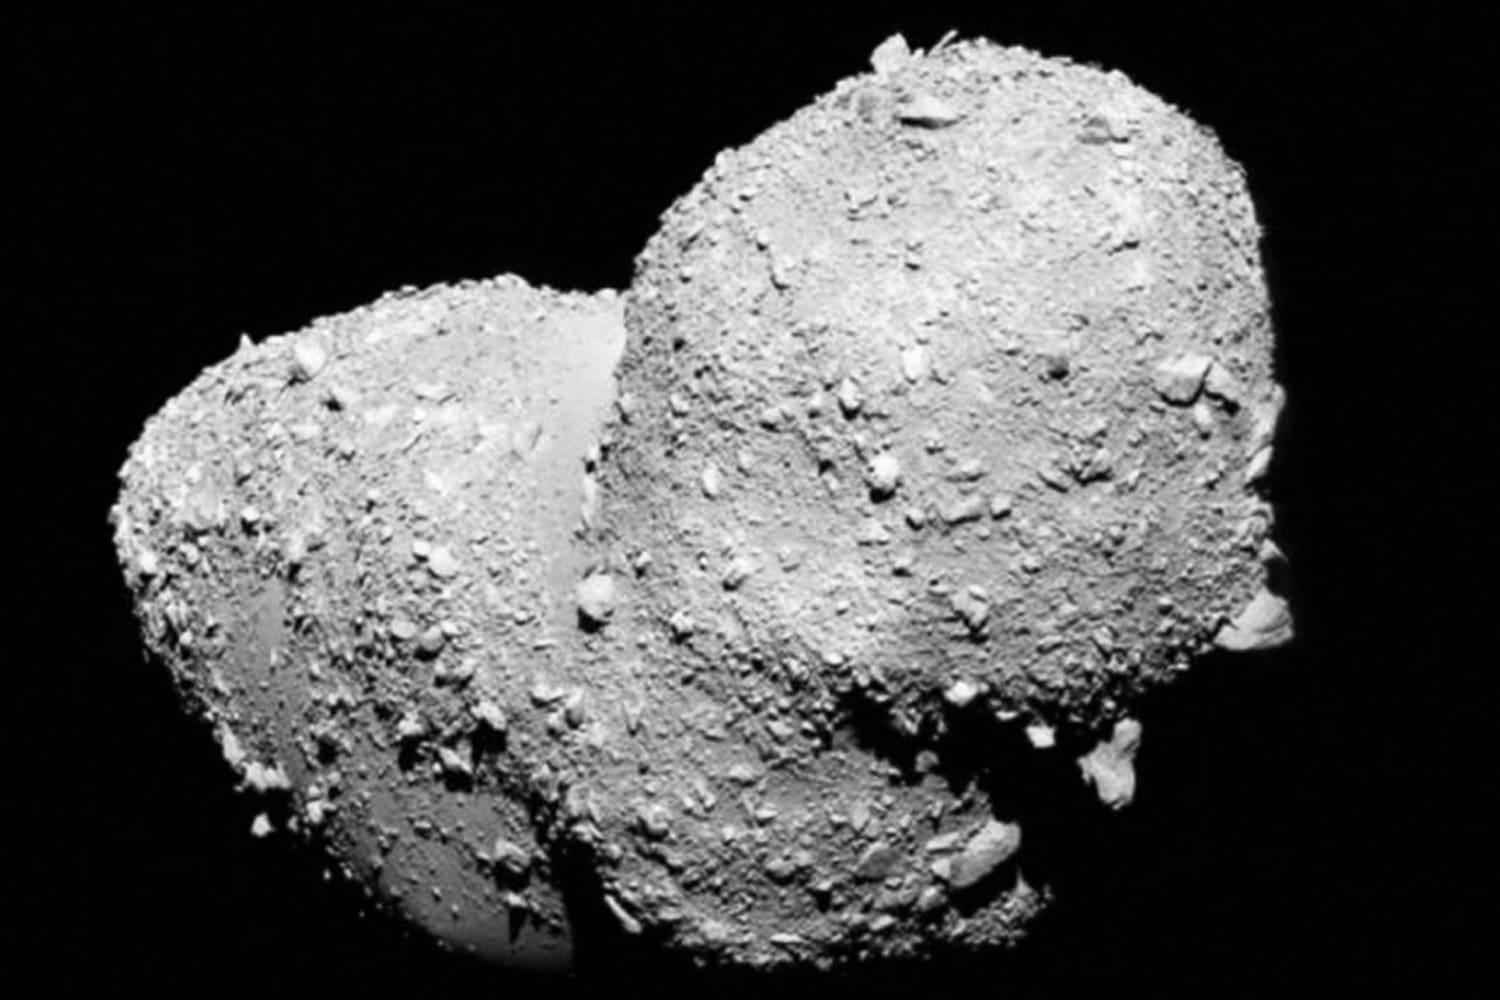 Los científicos han descubierto pequeños granos de sal en una muestra de asteroide